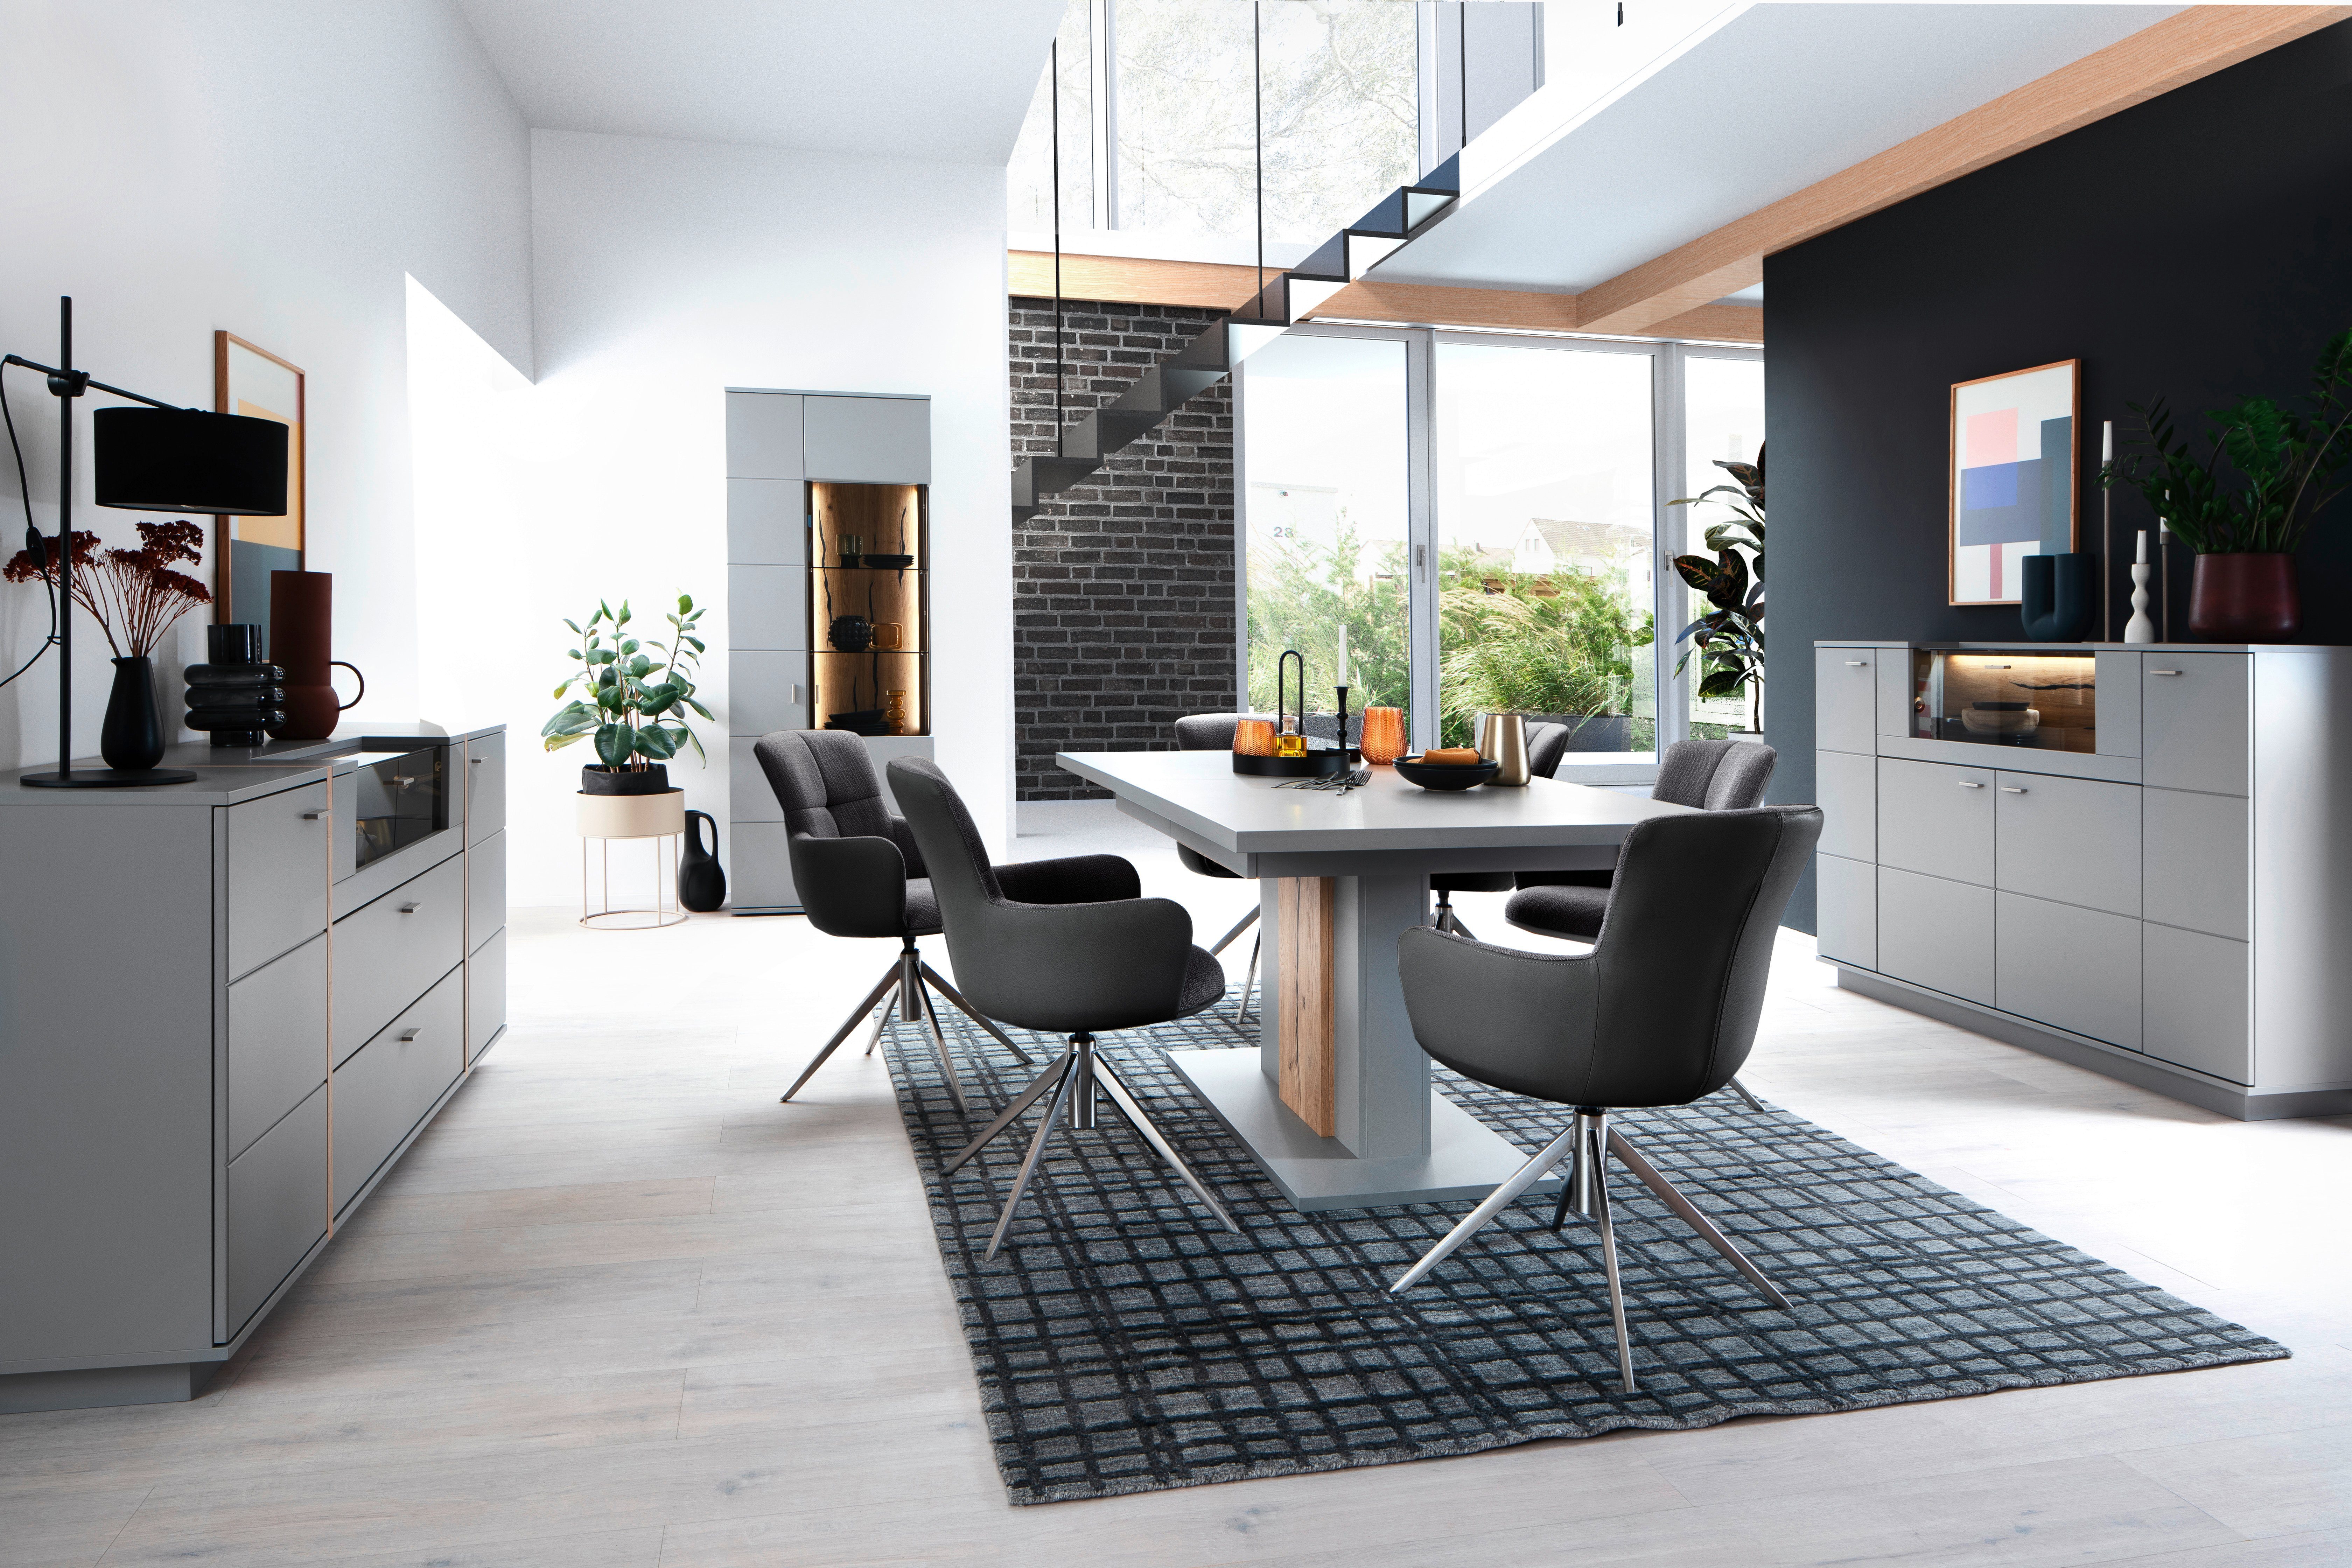 MCA furniture Esszimmerstuhl Mecana 120 Edelstahl Materialmix, Set bis mit 2er gebürstet Stuhl | 2 Nivellierung, Antrazit 360° drehbar kg | (Set, Antrazit St)